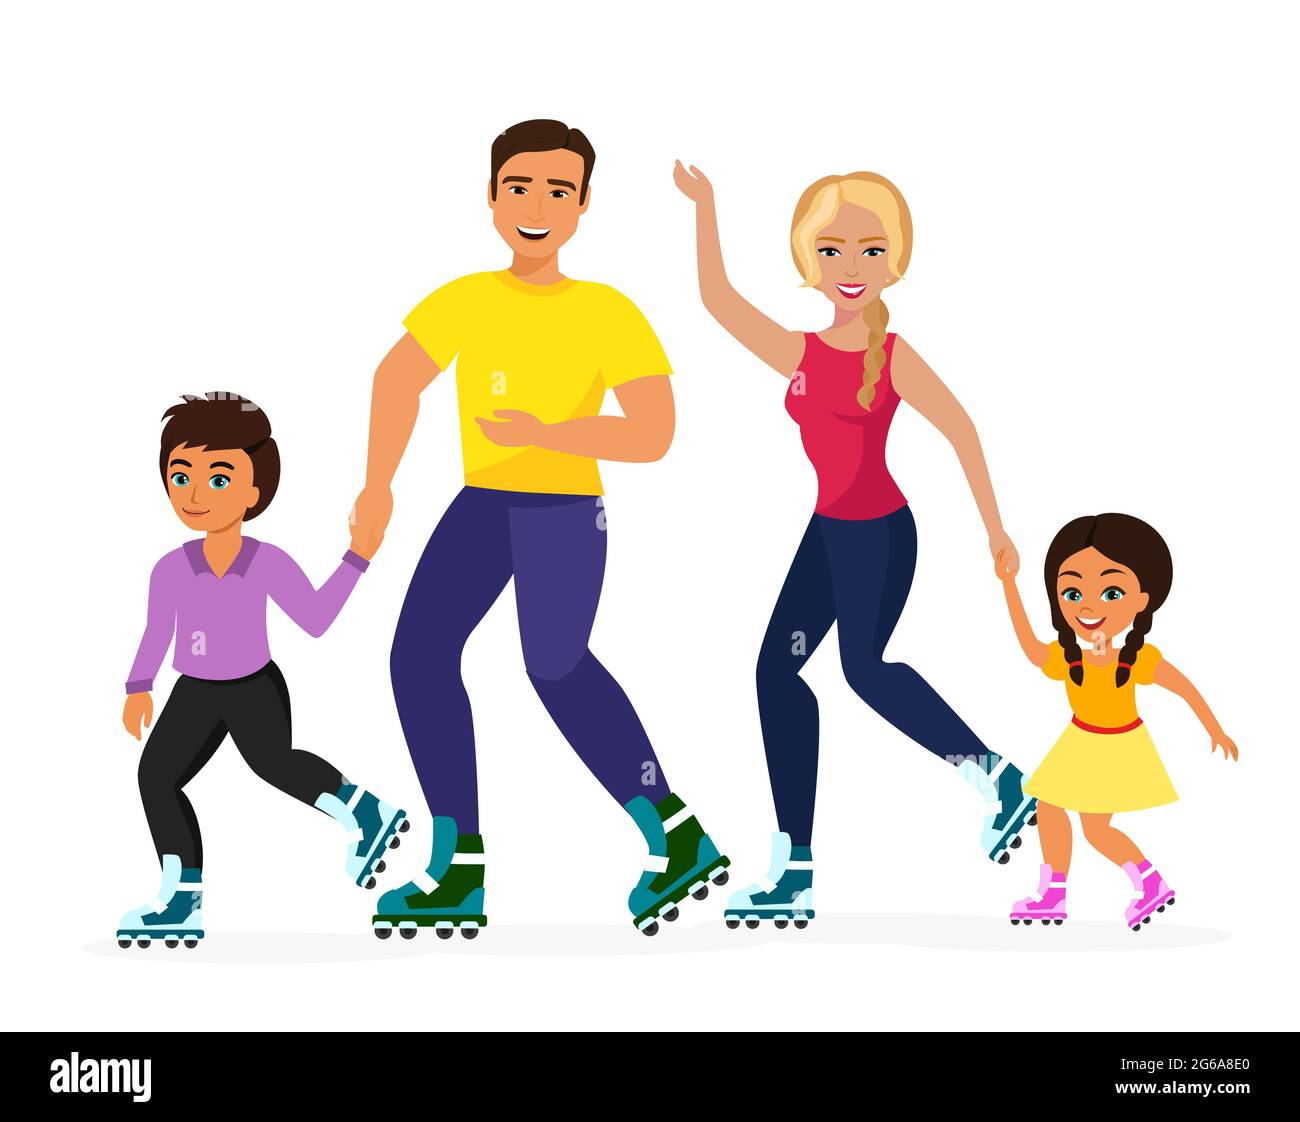 Vektor-Illustration von Smiley Familie Skaten auf dem weißen Hintergrund. Sportfamilie, Mutter, Vater, Mutter und Sohn glücklich zusammen. Gesundes Leben Stock Vektor